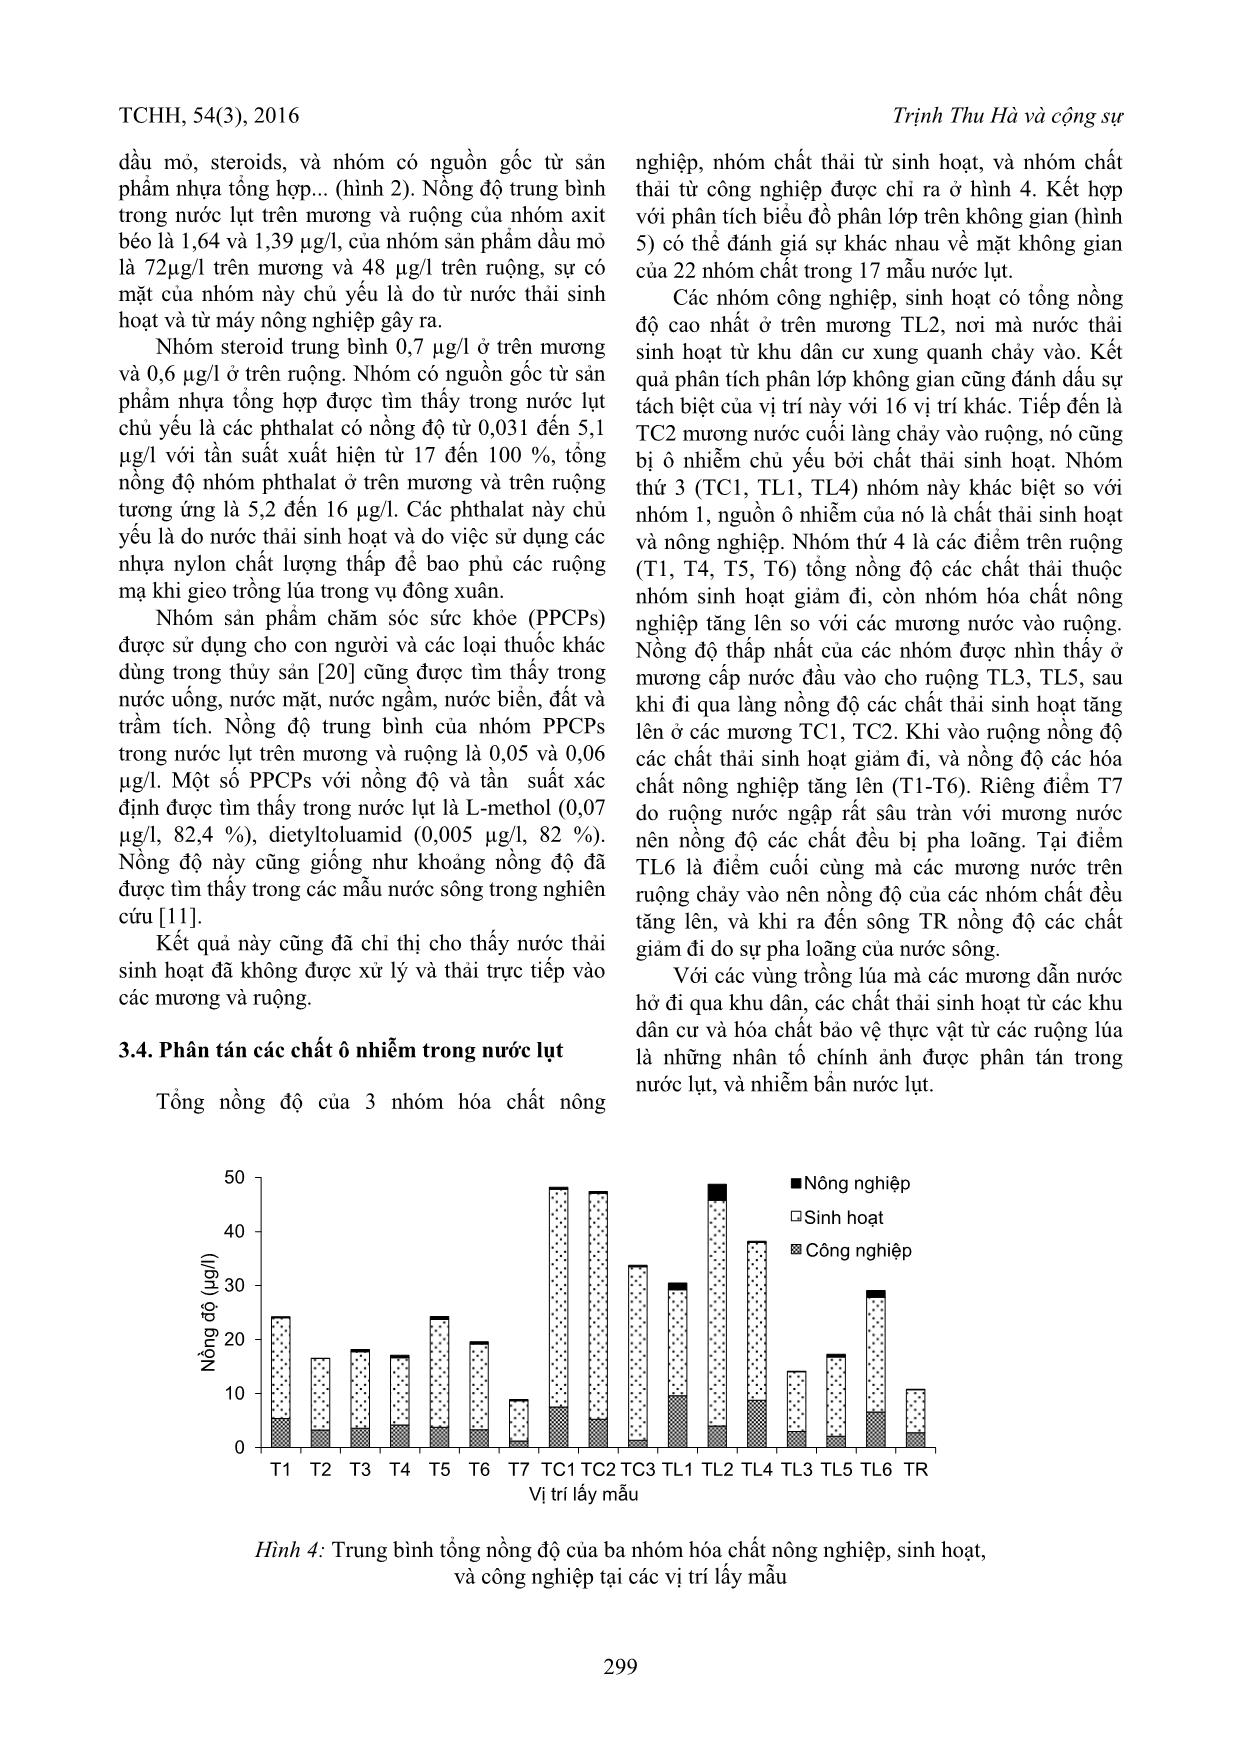 Phân tích đồng thời các chất ô nhiễm hữu cơ trong nước lụt miền Trung Việt Nam trang 4